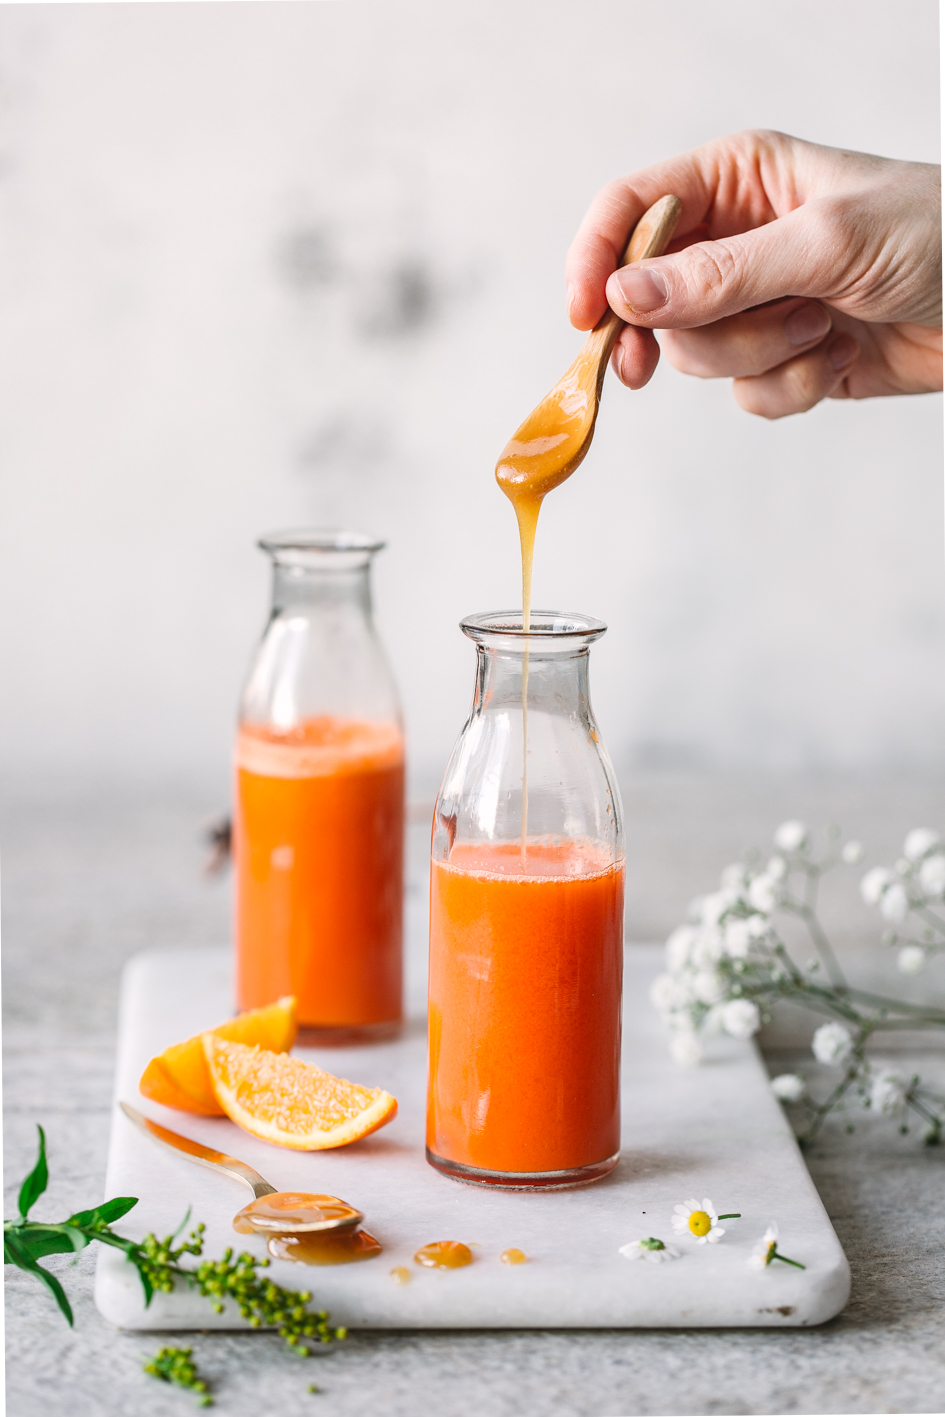 Möhren-Orangen-Saft mit Manuka Honig